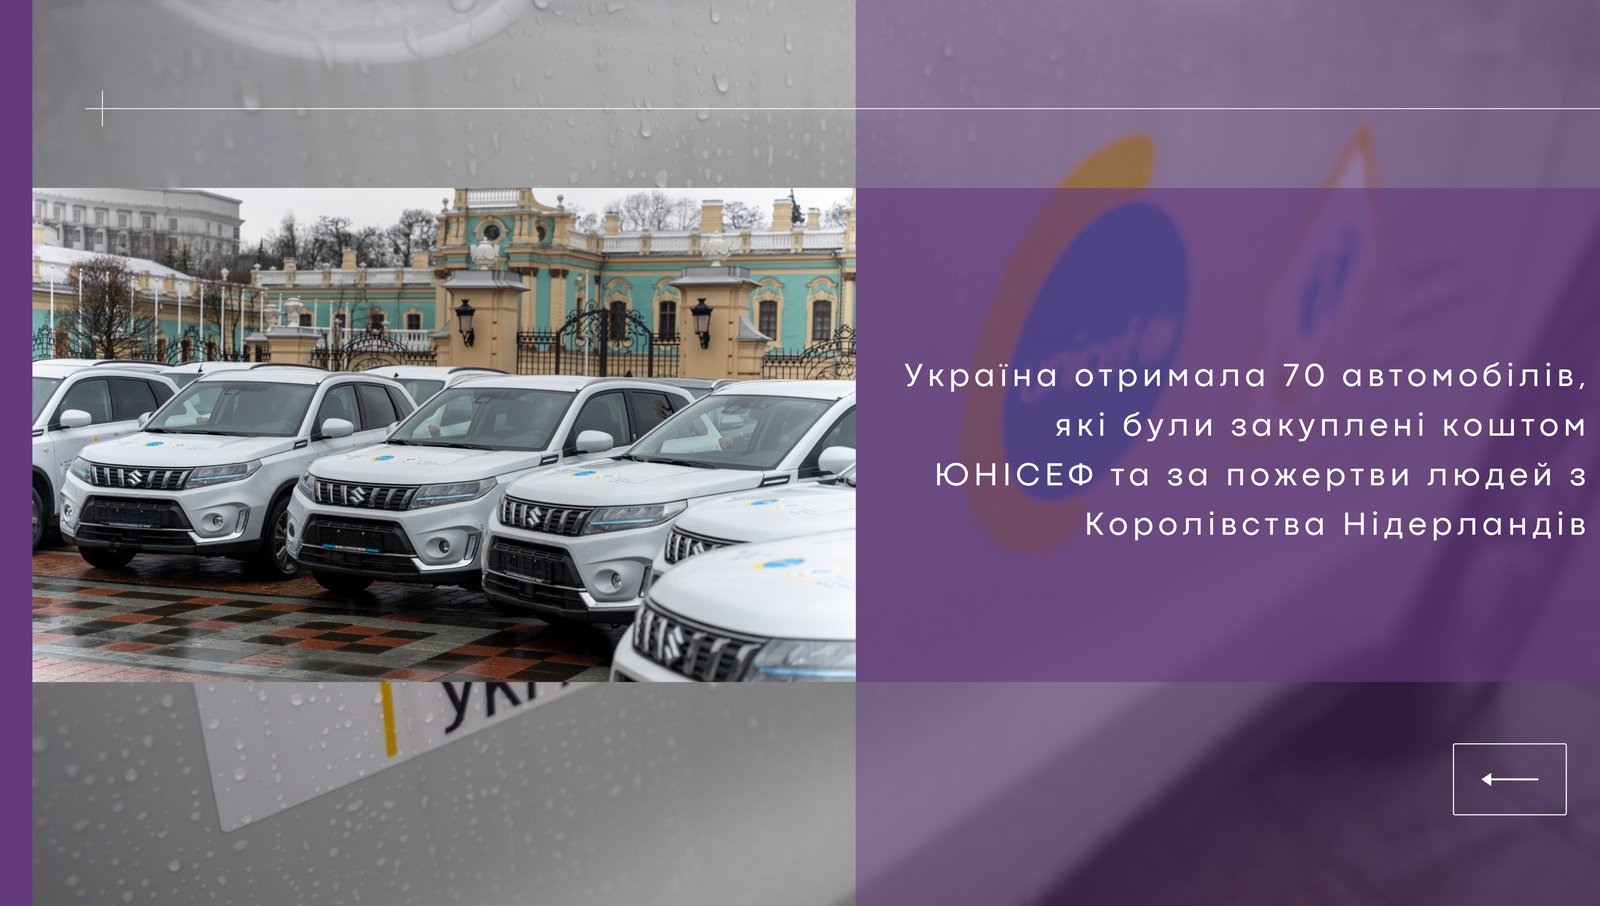 Україна отримала від ЮНІСЕФ 70 автомобілів для патронажних медсестер